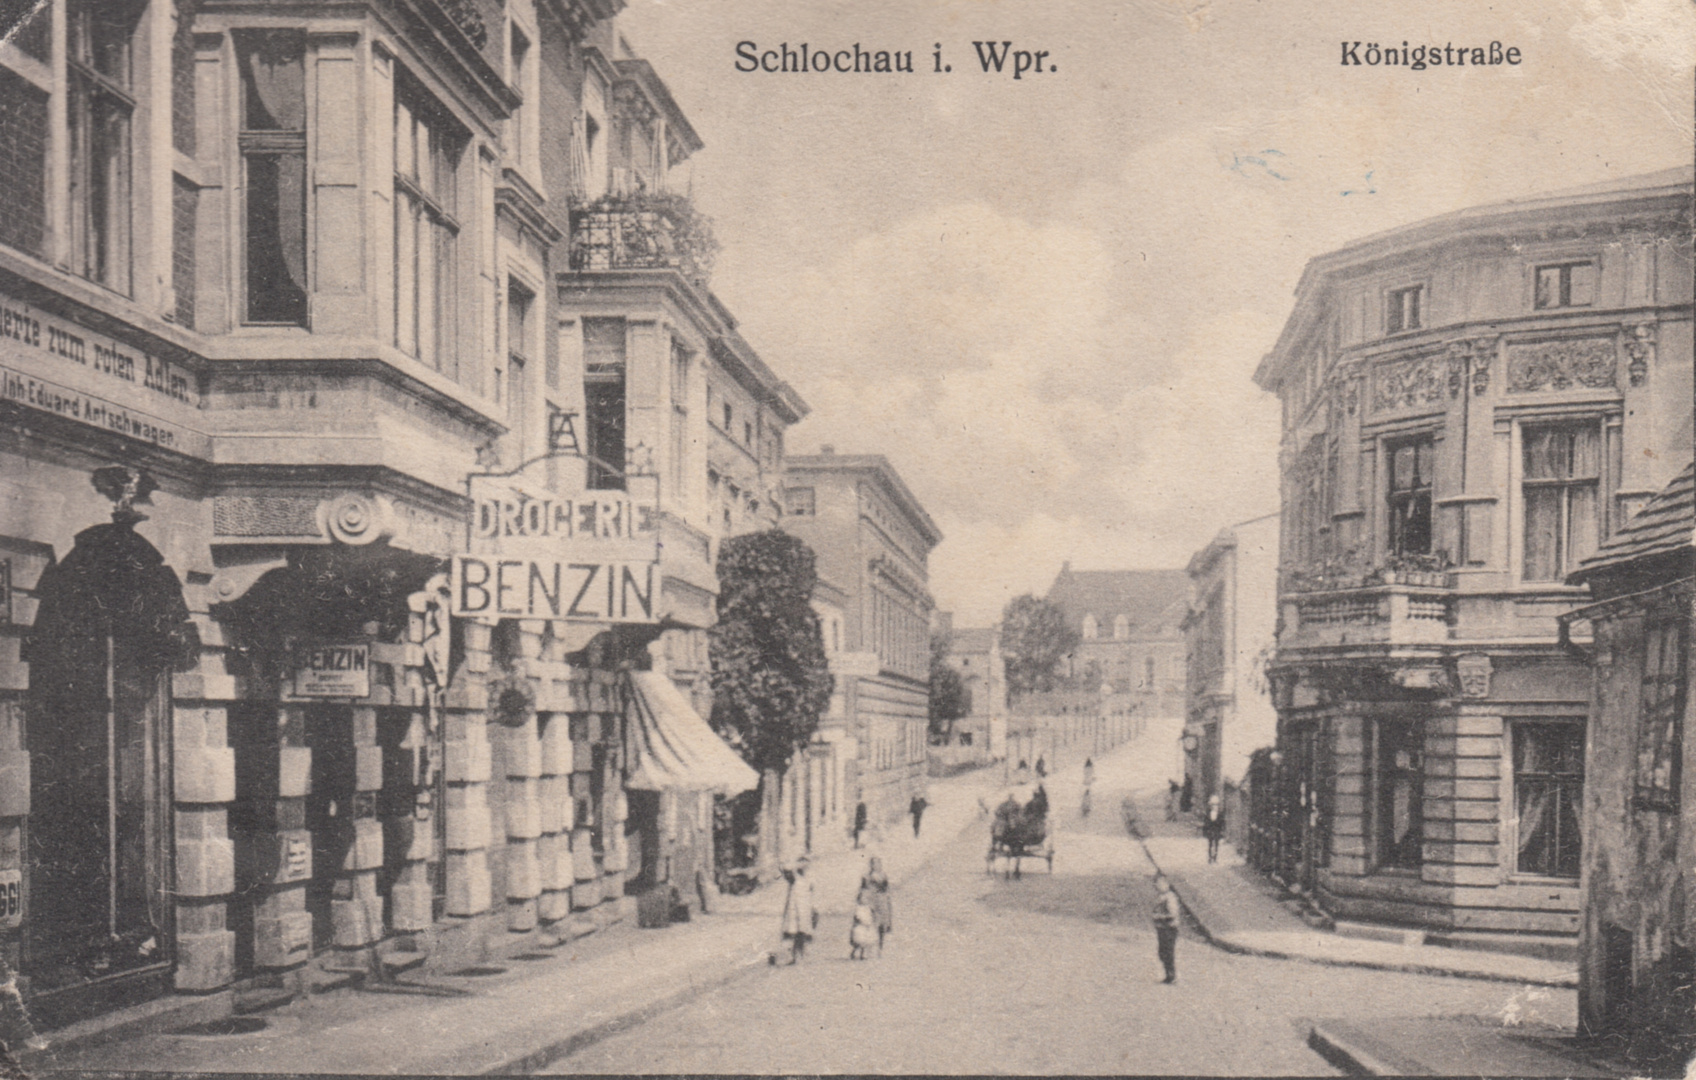 Schlochau in Westpreußen - Königstraße